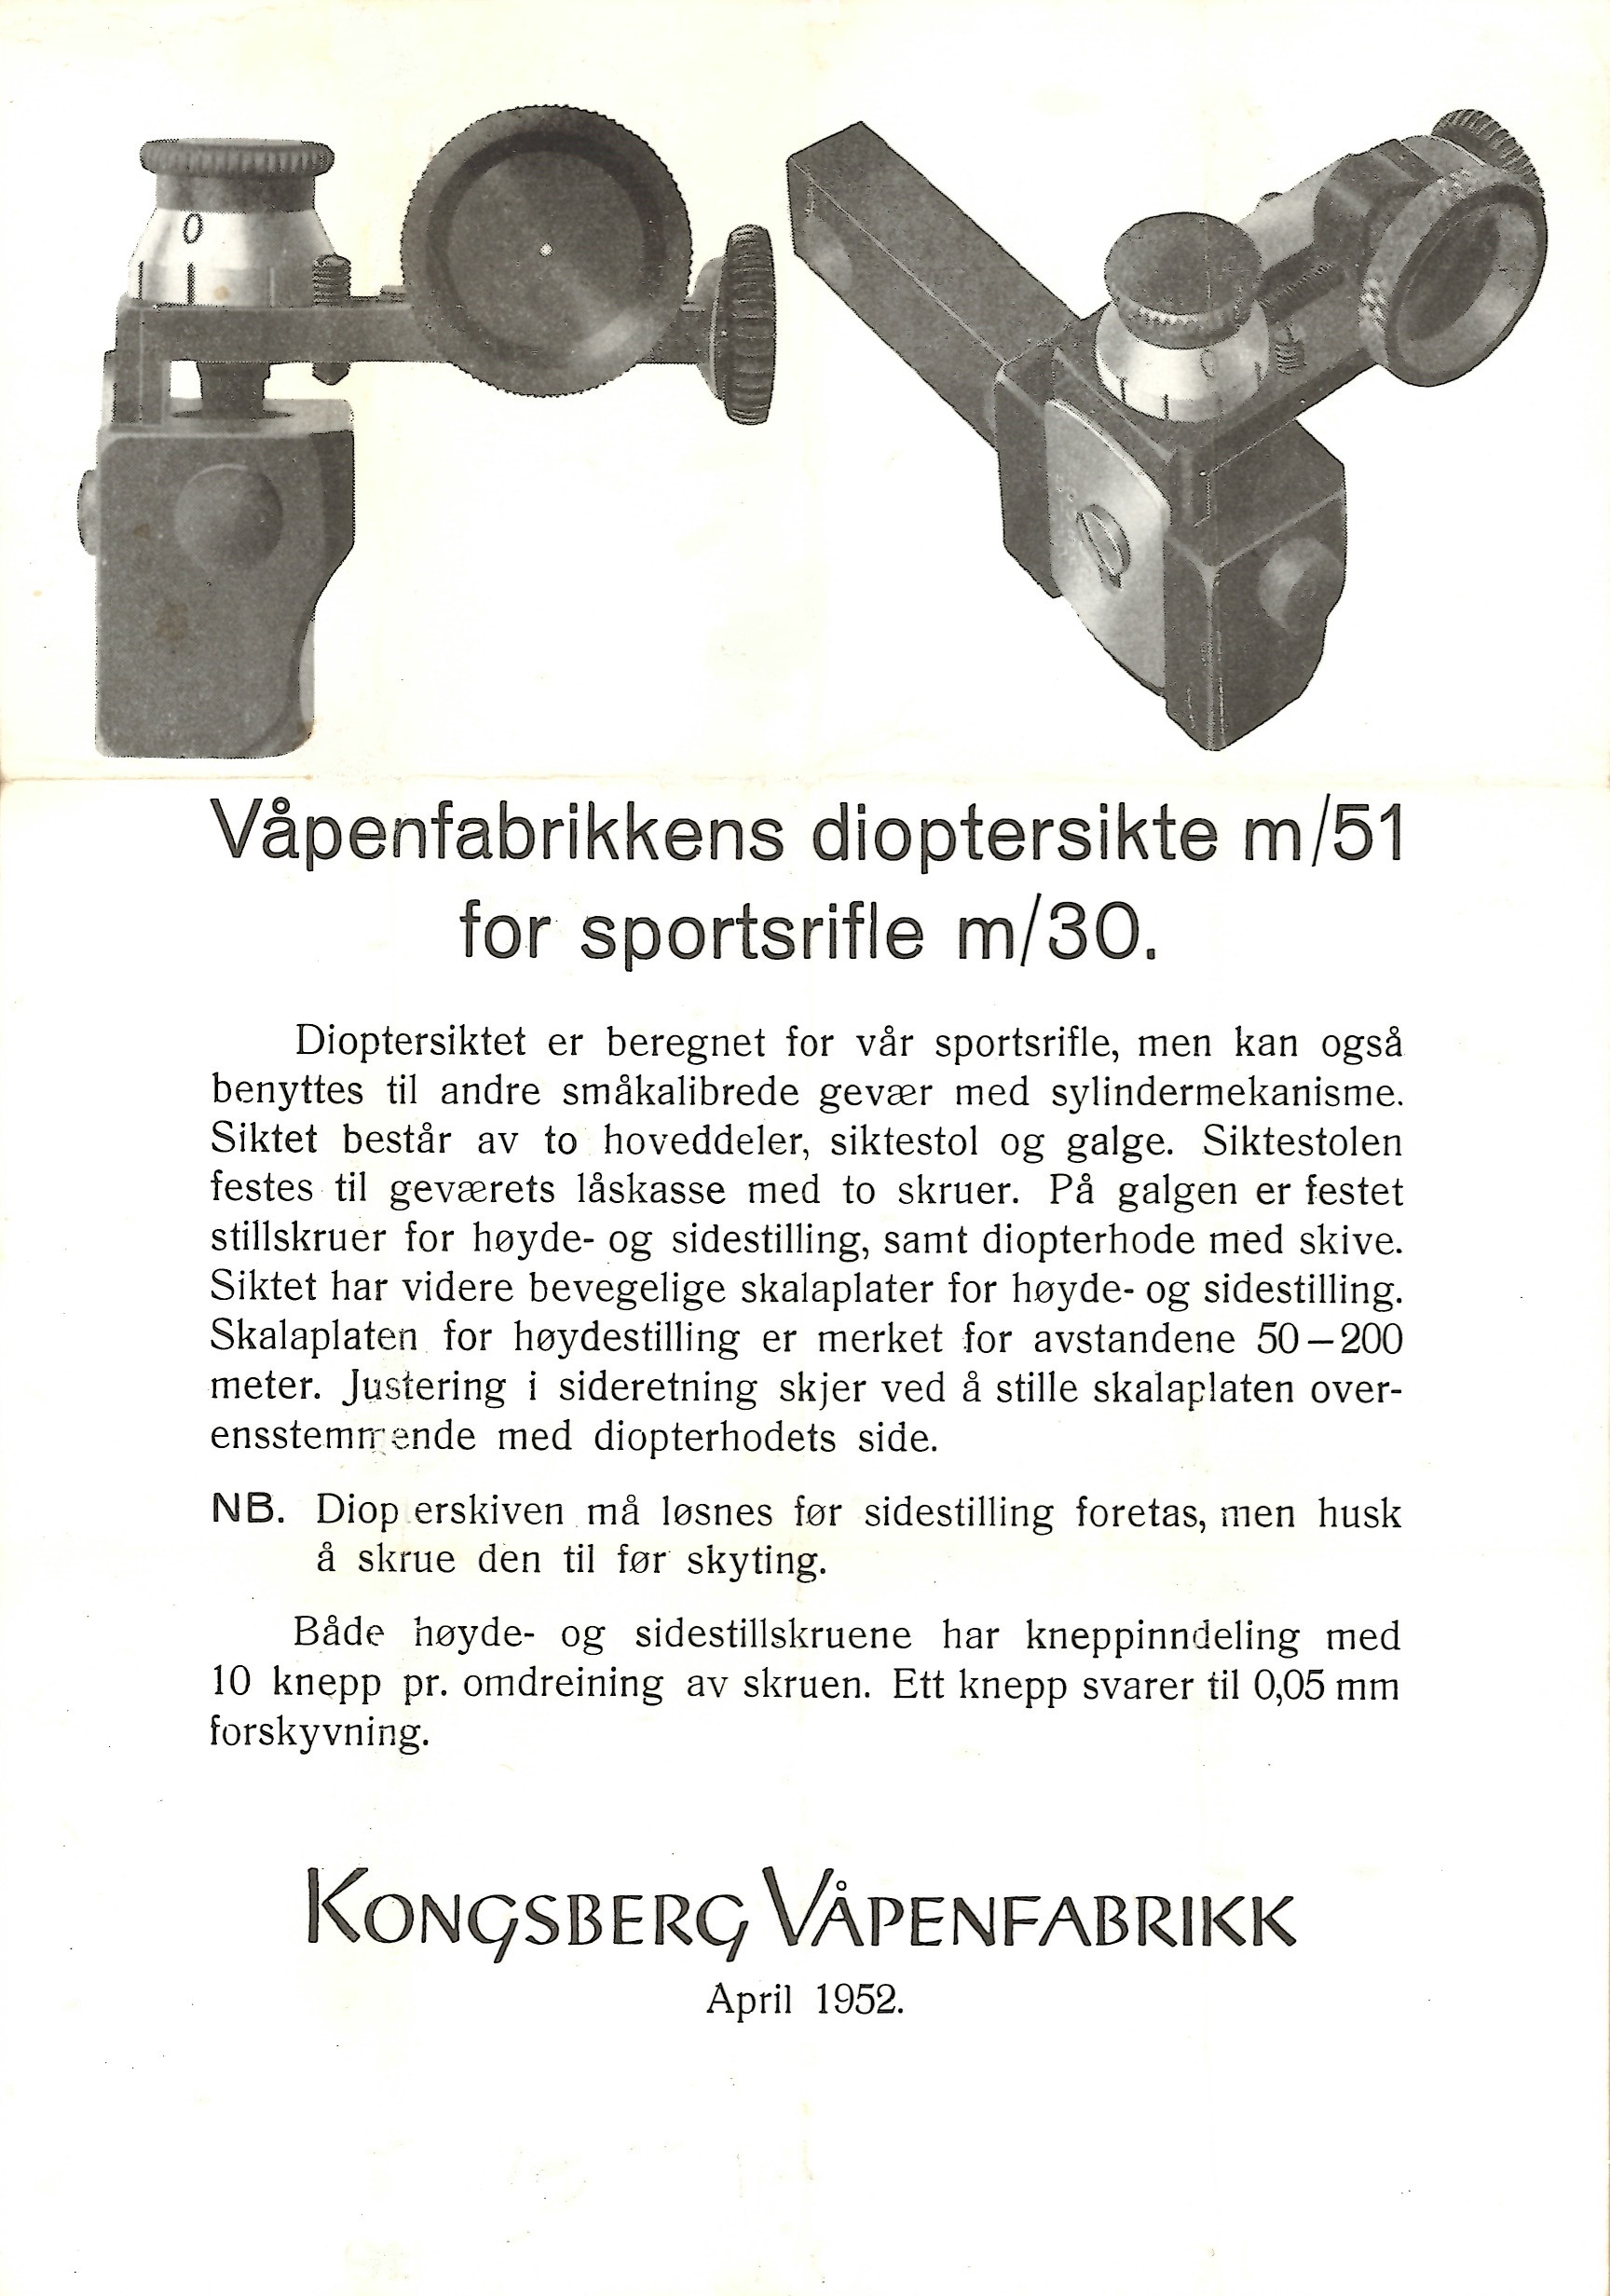 ./guns/utstyr/bilder/Utstyr-Krag-Dioptersikte-Kongsberg-M51-M30-7.jpg